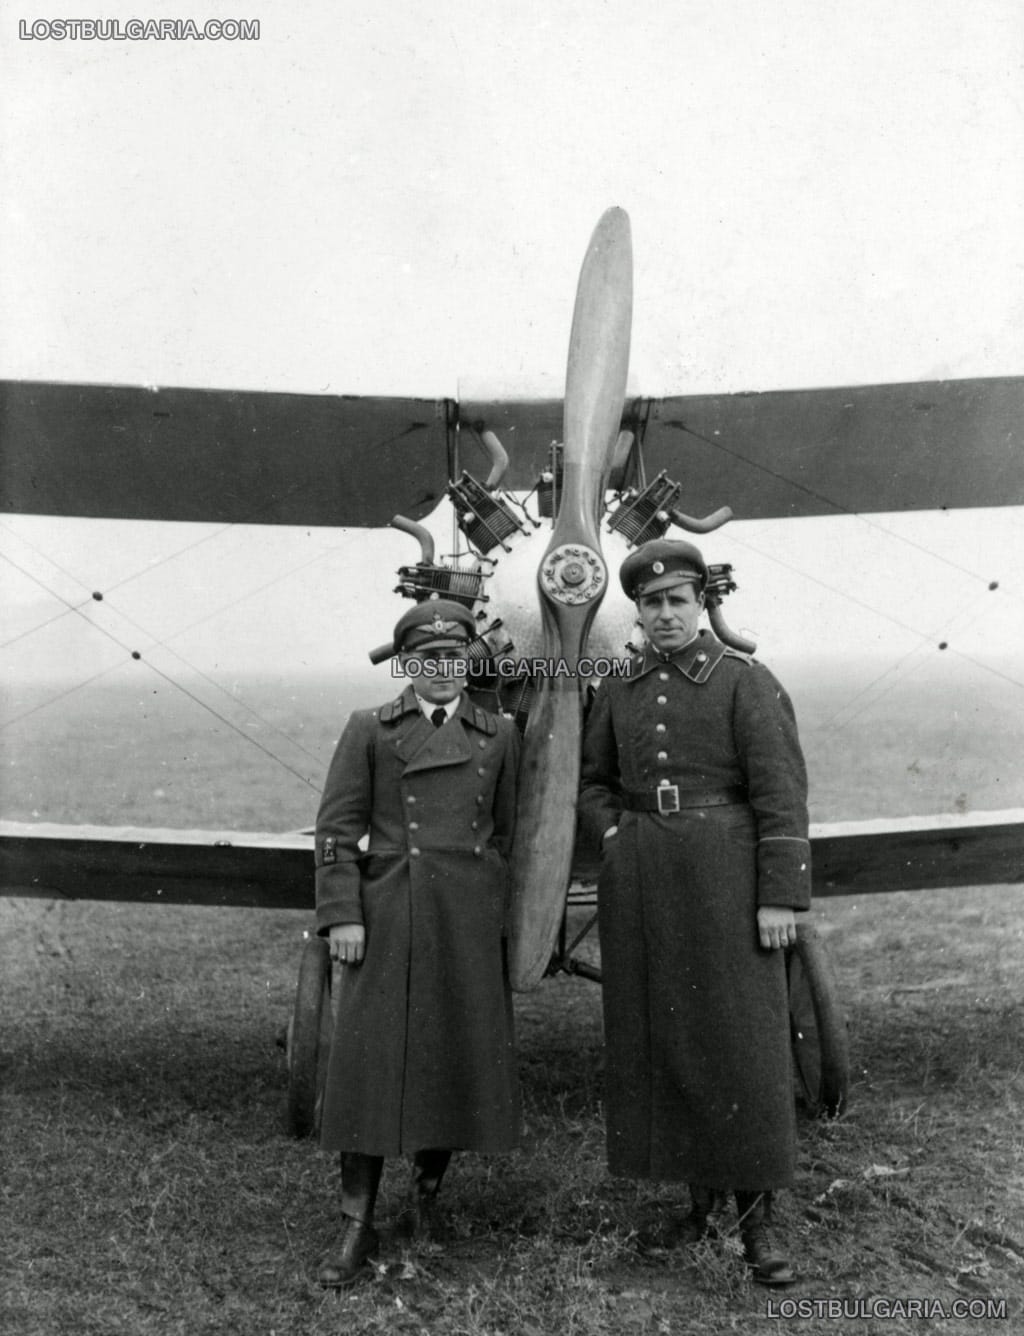 Летецът Васил Манолов и офицер от пехотата пред тренировъчен самолет, началото на 30-те години на ХХ век